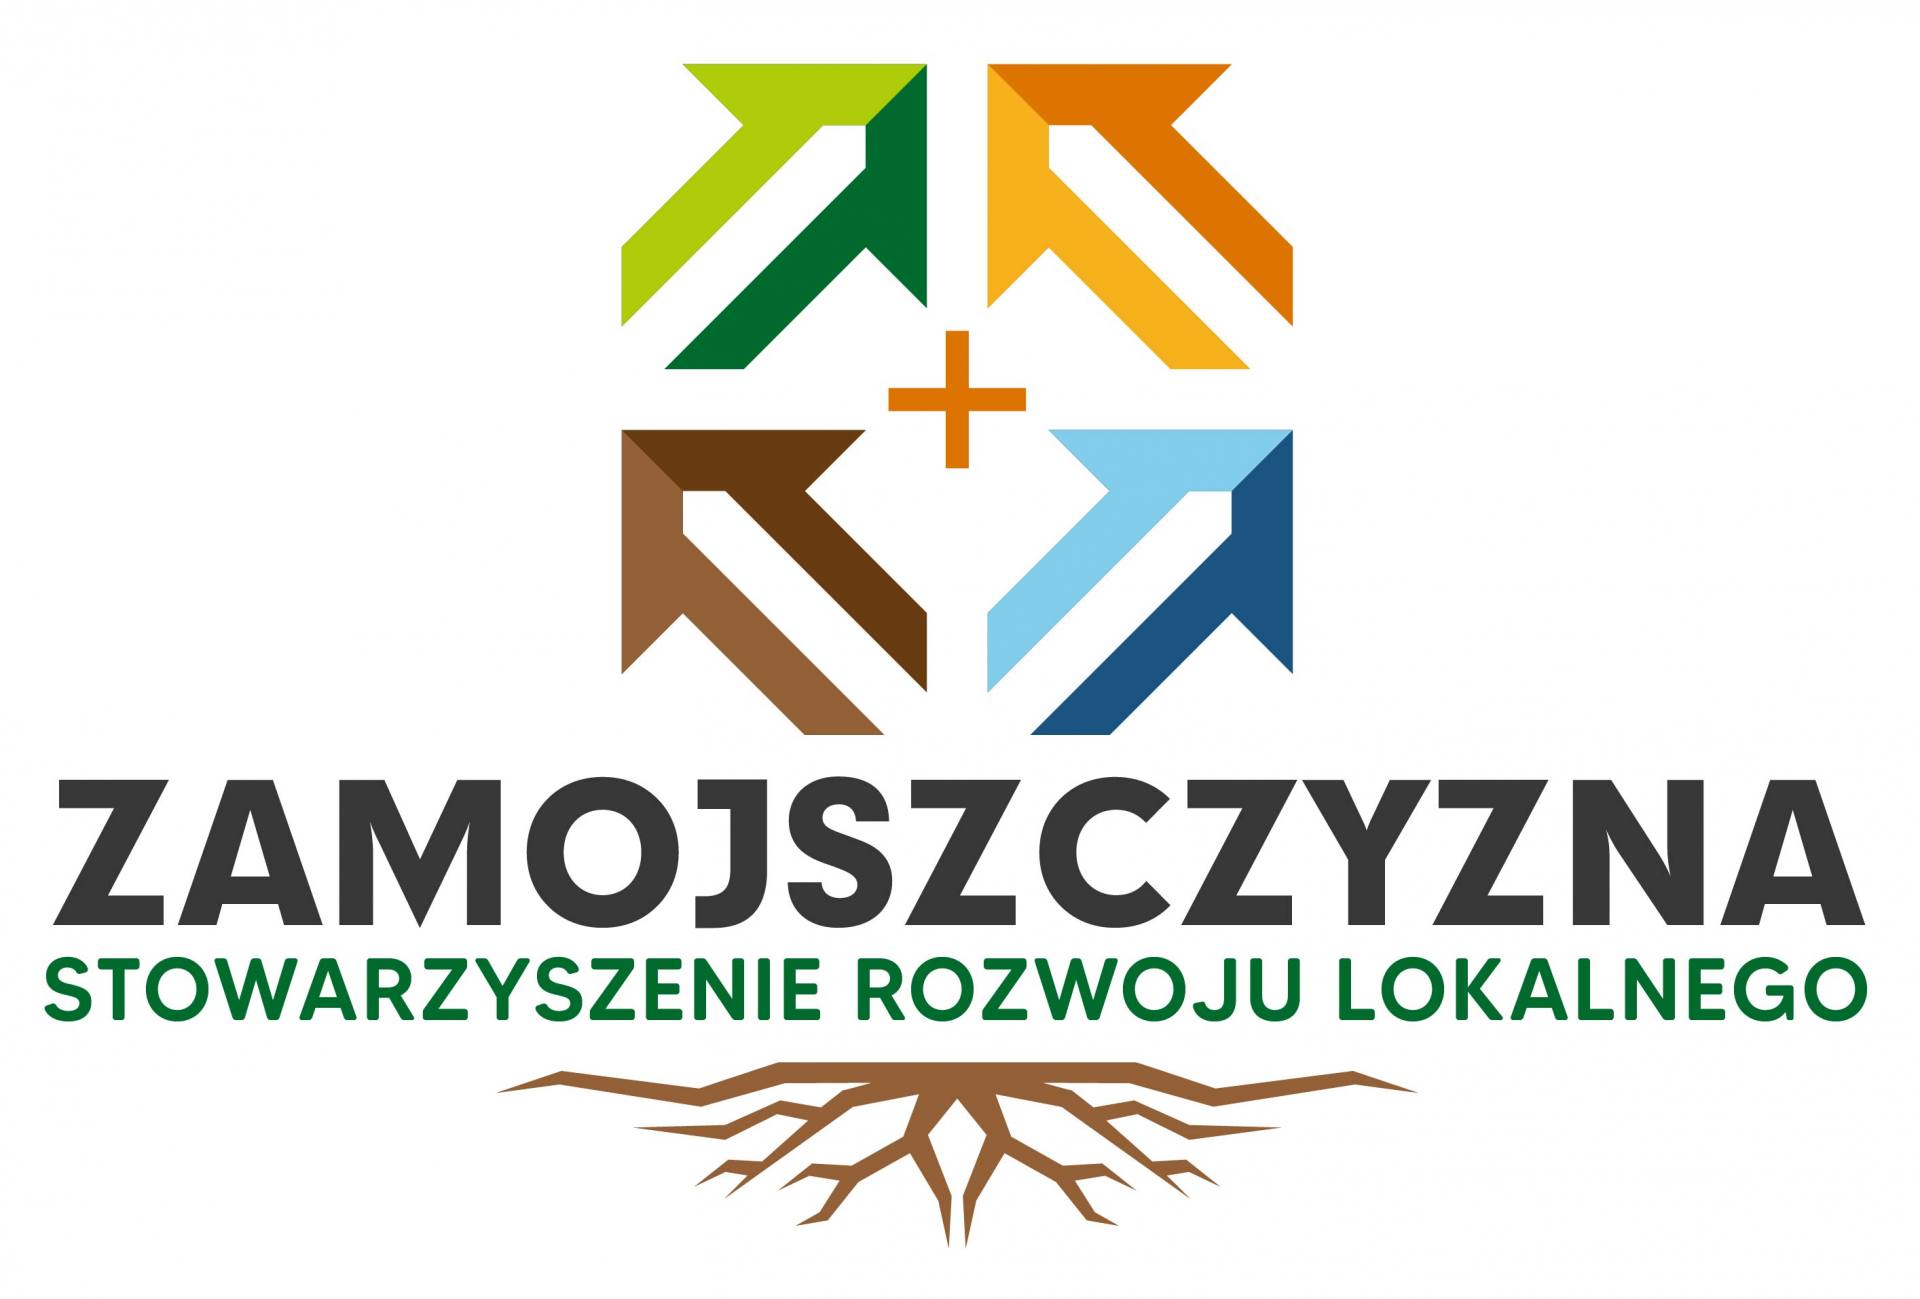 zamojszczyzna logo Stowarzyszenie Rozwoju Lokalnego Zamojszczyzna zostało członkiem Rady Przedsiębiorców przy Rzeczniku Małych i Średnich Przedsiębiorców.